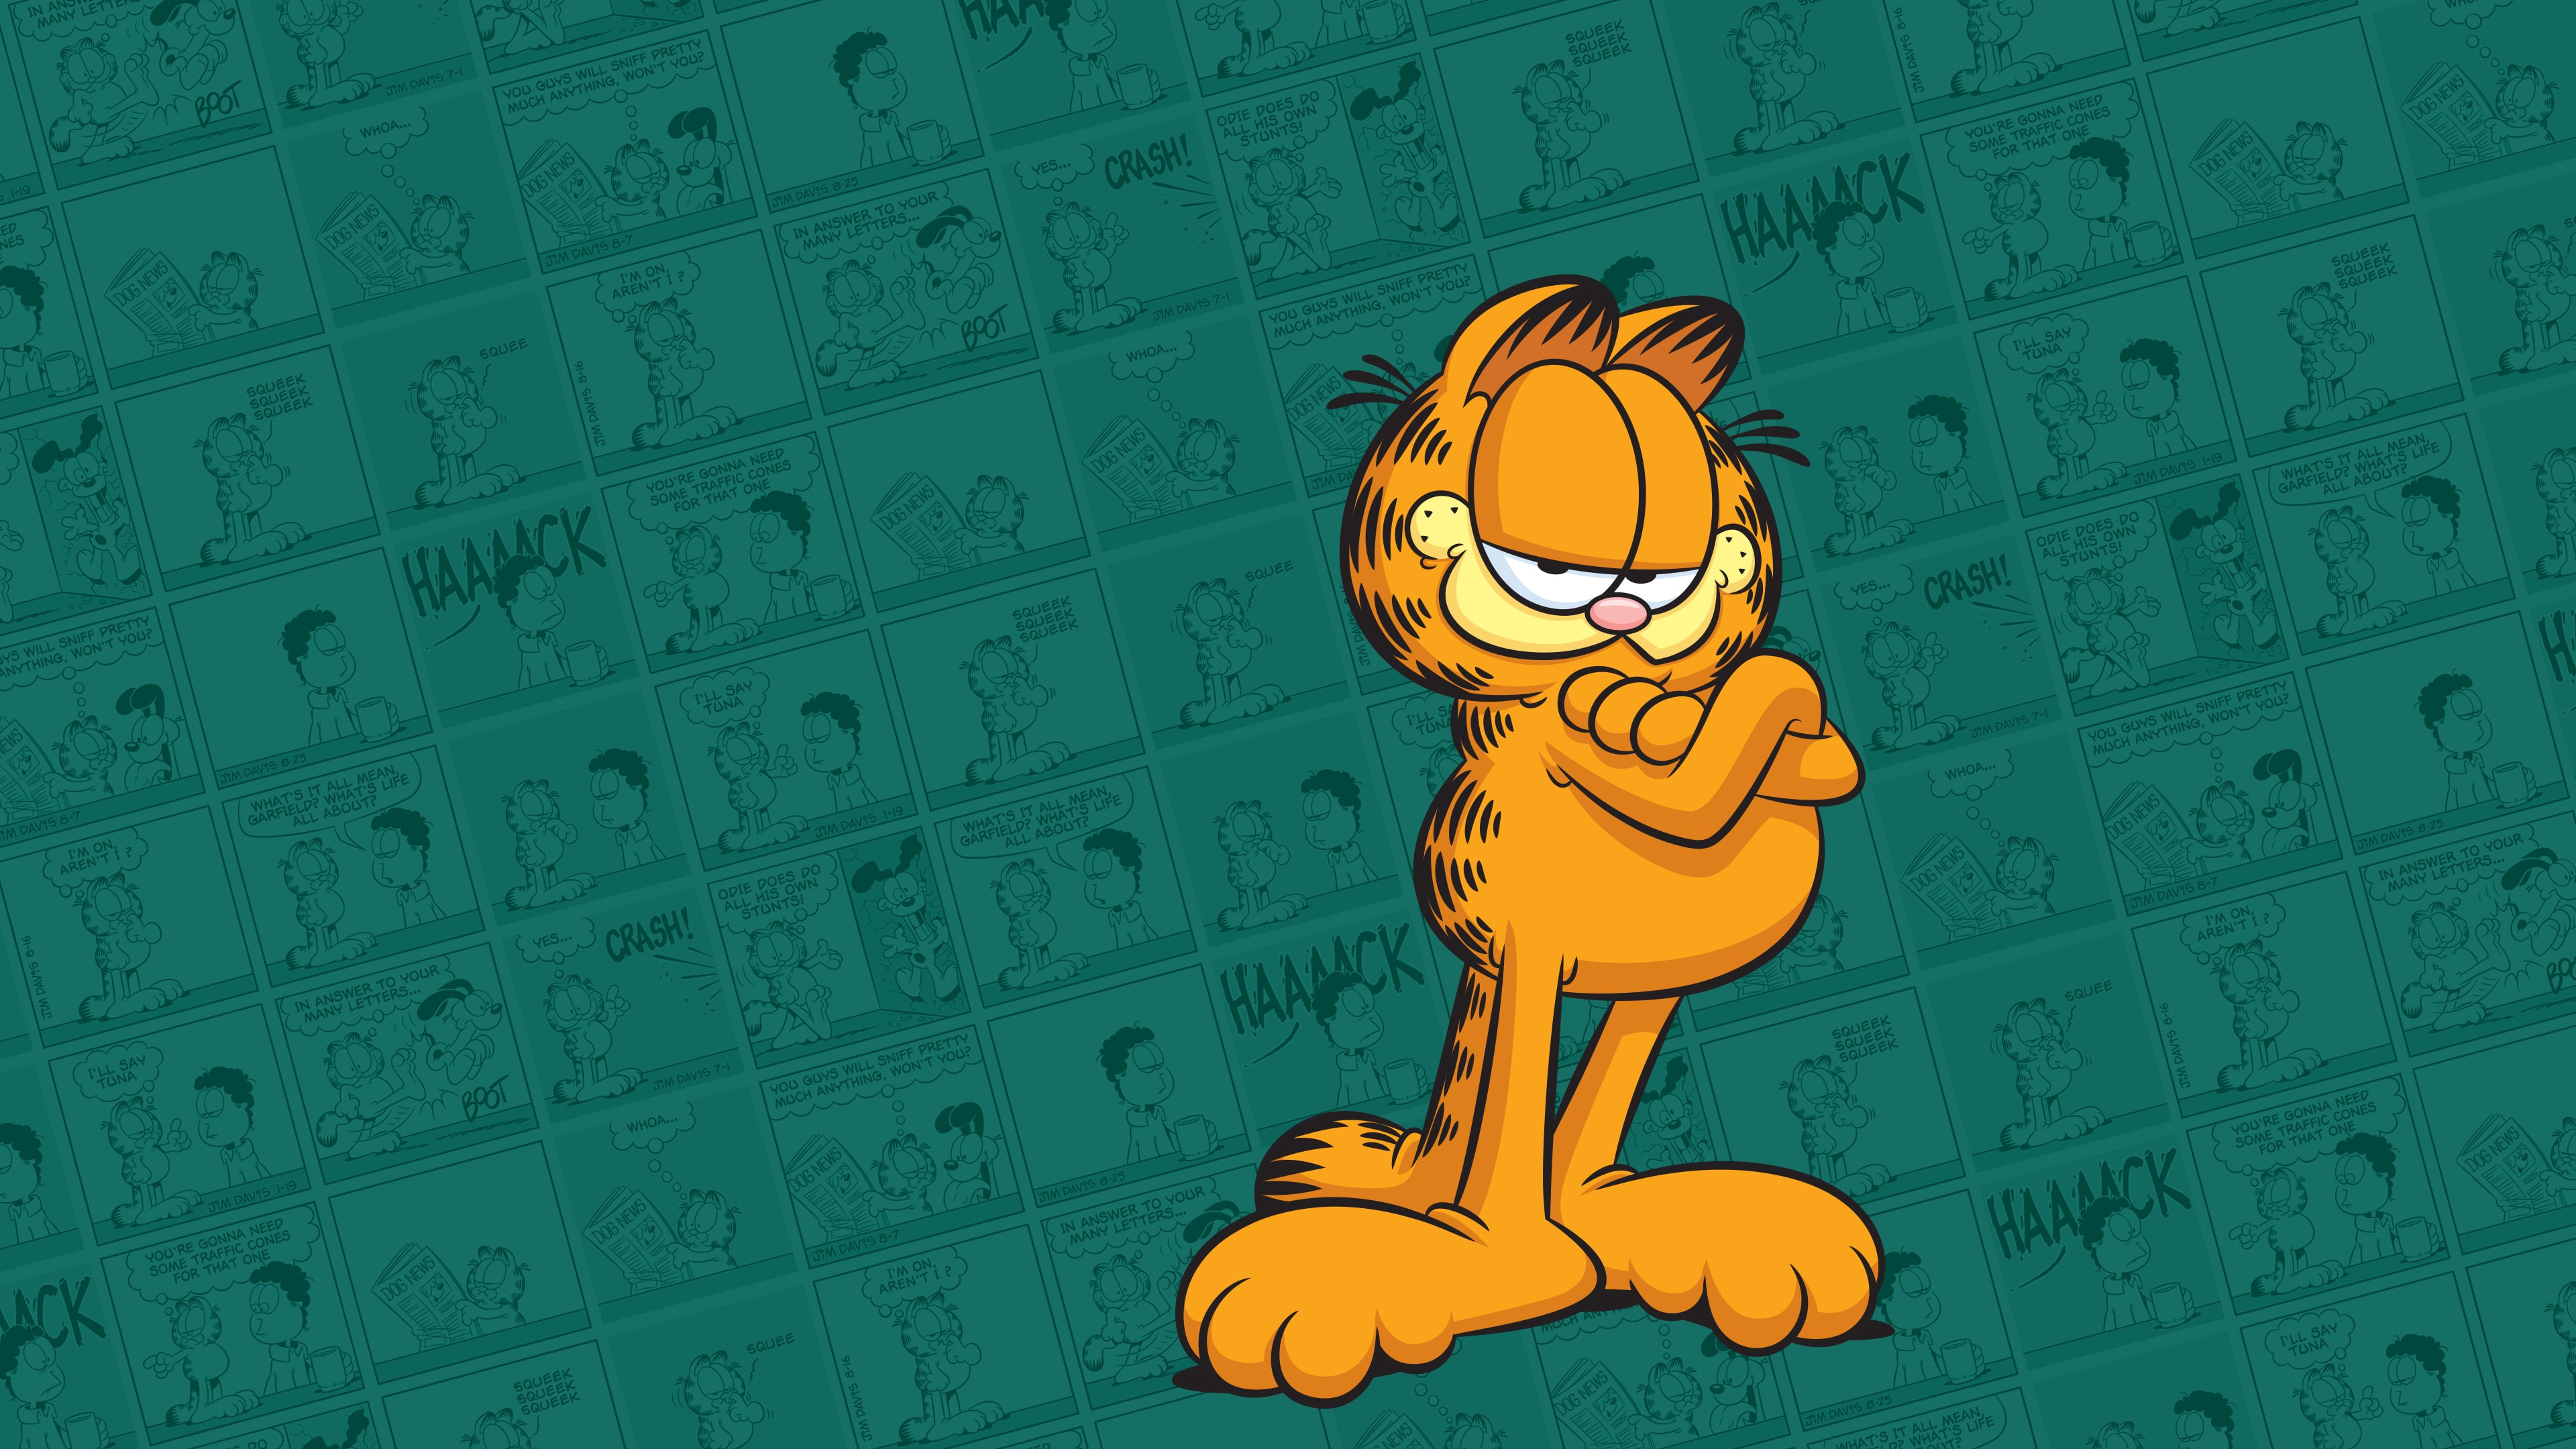 Pinball FX - Garfield Pinball